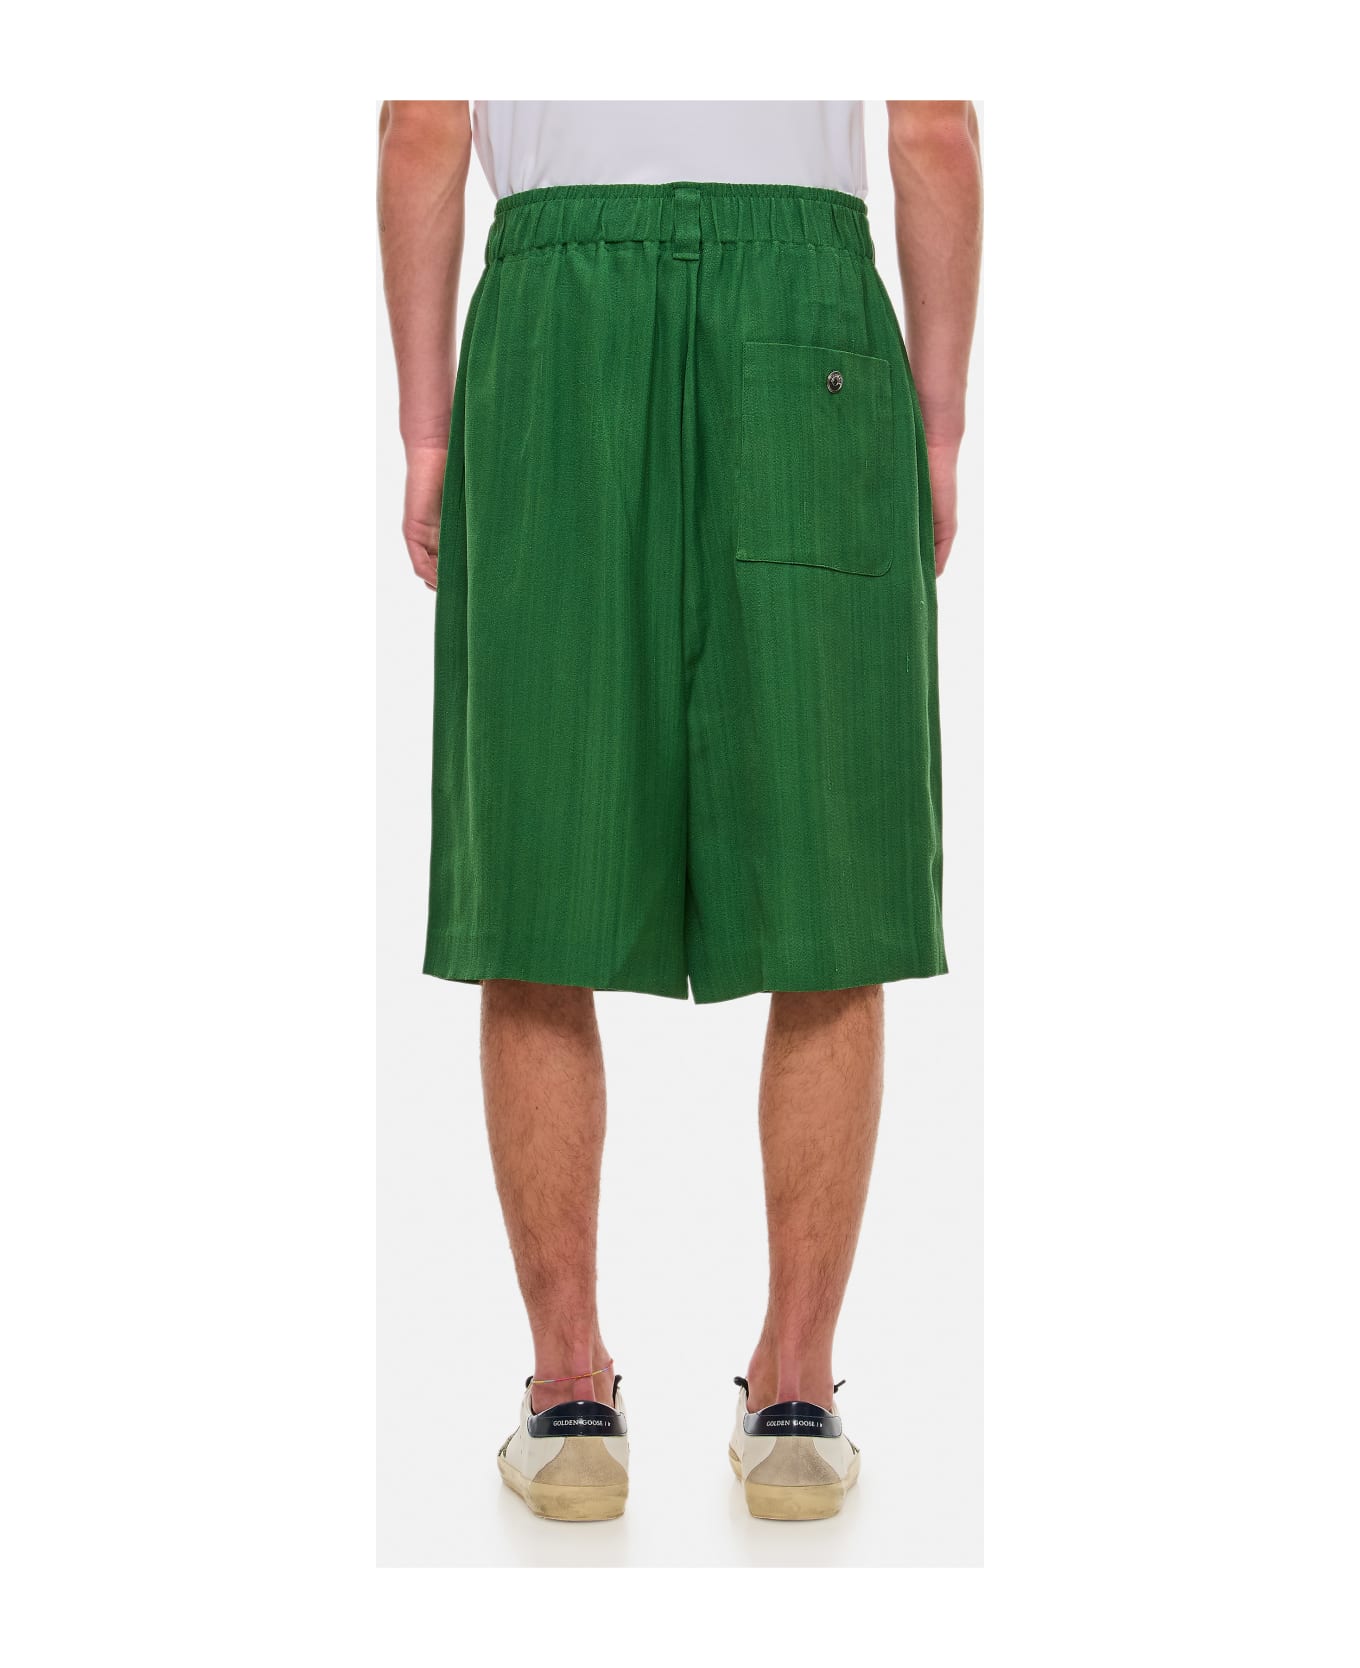 Jacquemus Juego Shorts - Green ショートパンツ